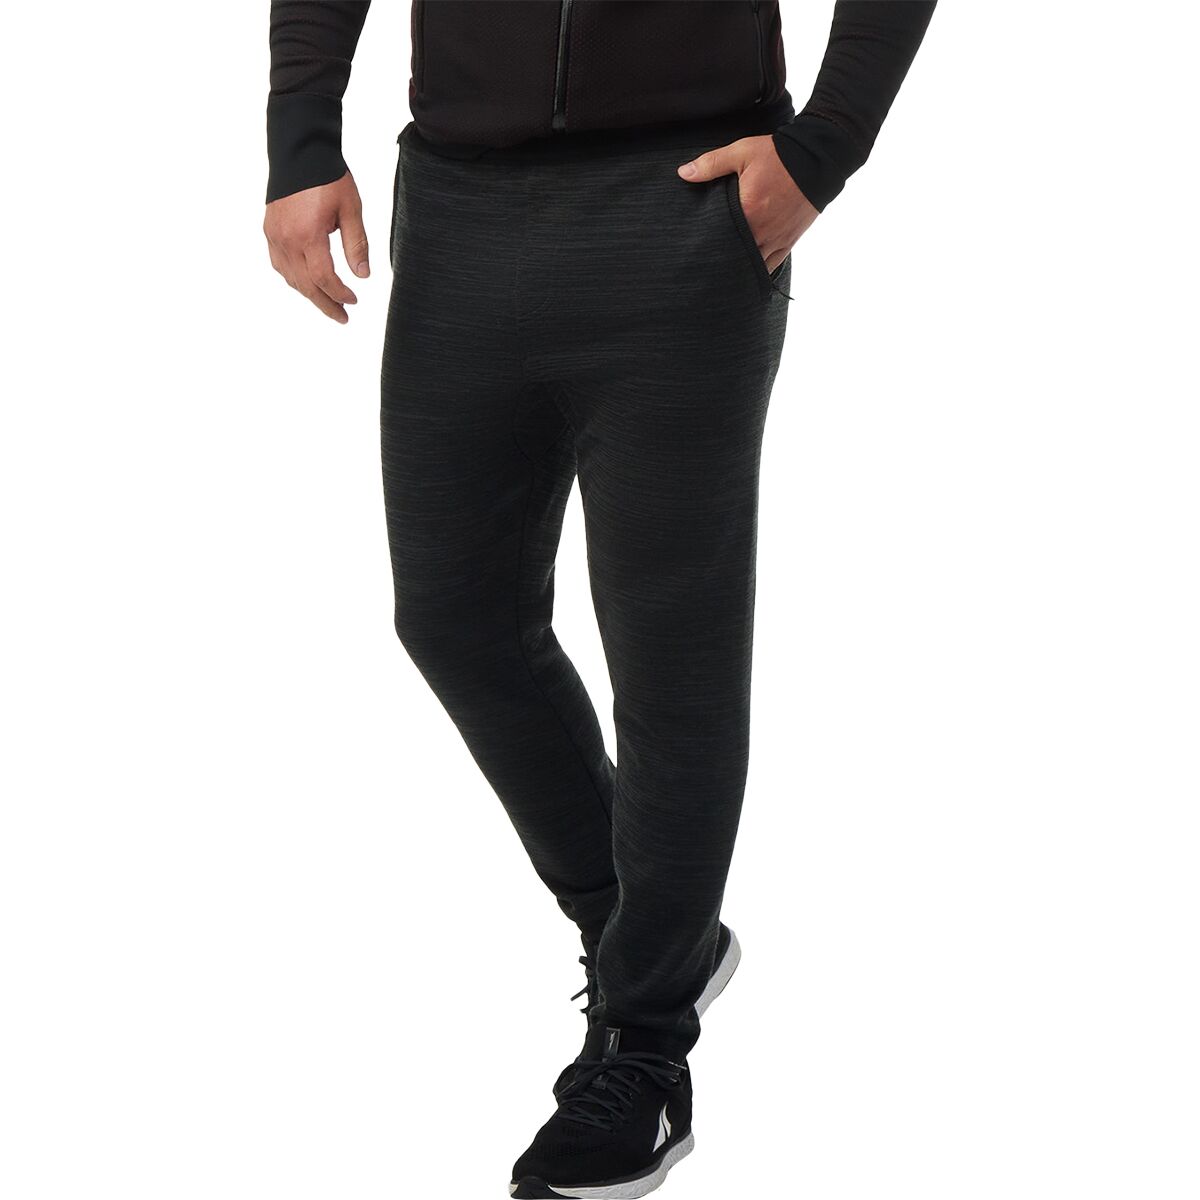 Smartwool Intraknit Merino Thermal Pant - Men's - Clothing